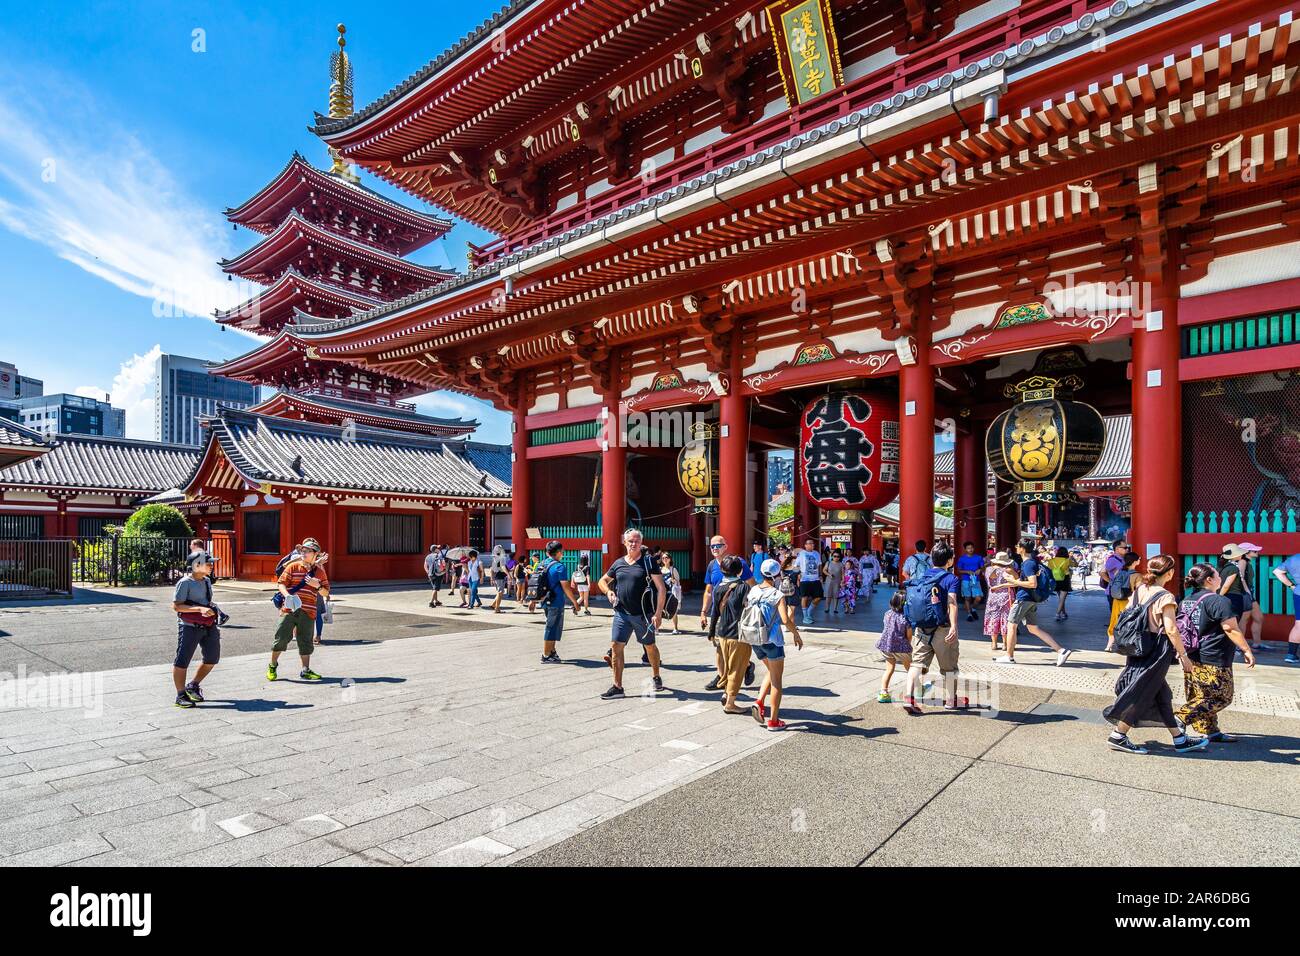 Entrée du temple Sensoji, le plus ancien temple bouddhiste de Tokyo et un monument touristique populaire. Tokyo, Japon, Août 2019 Banque D'Images